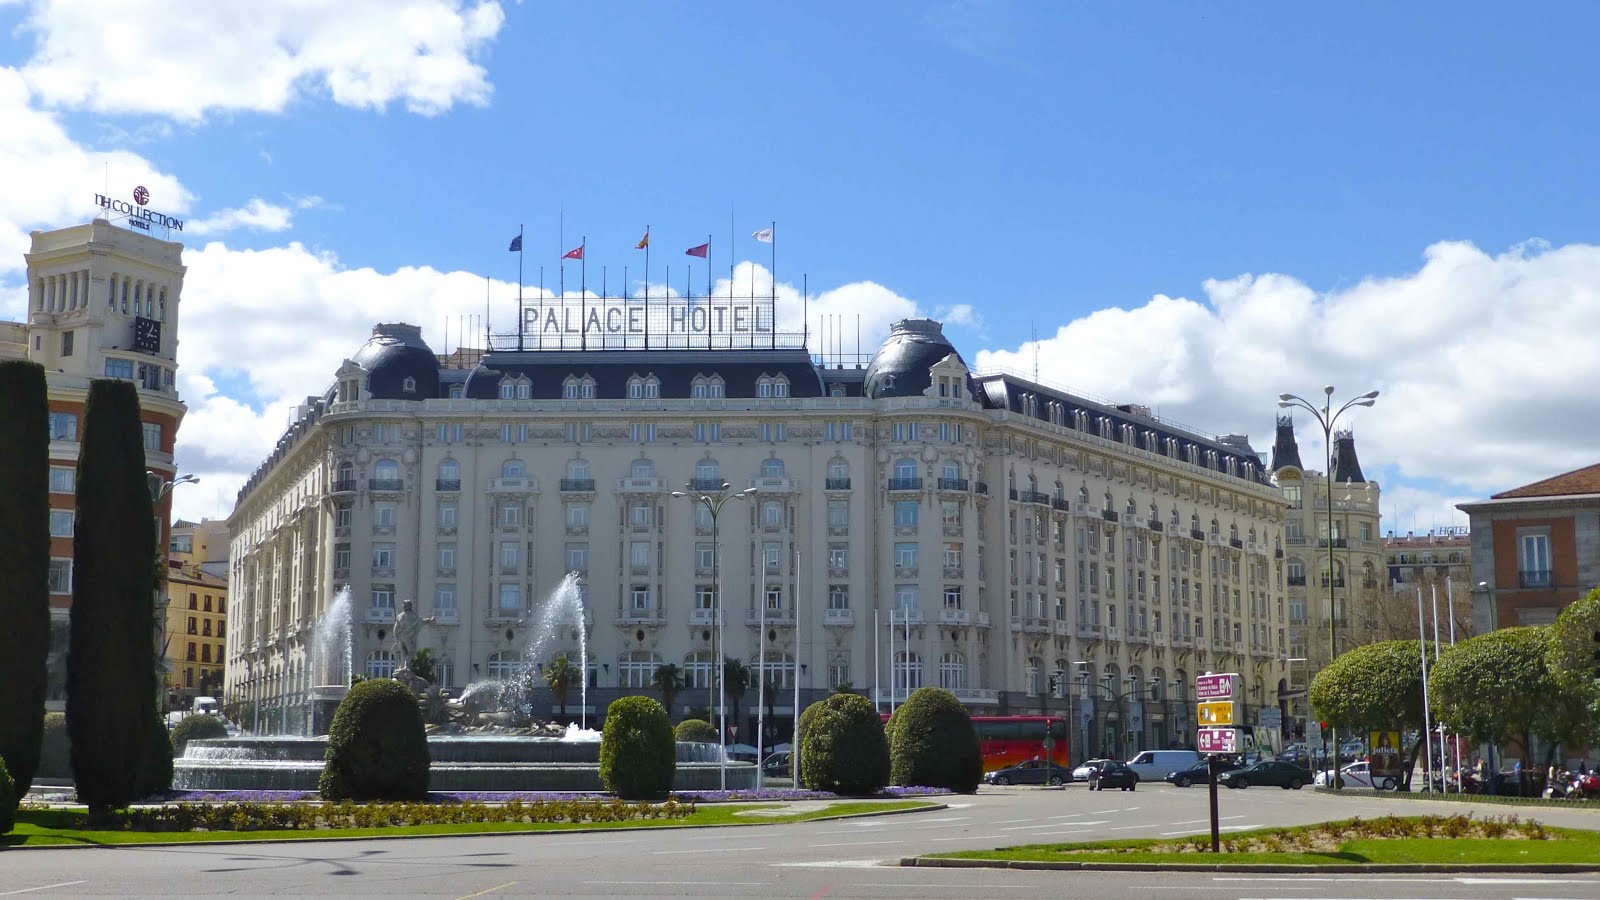 Palace Hôtel